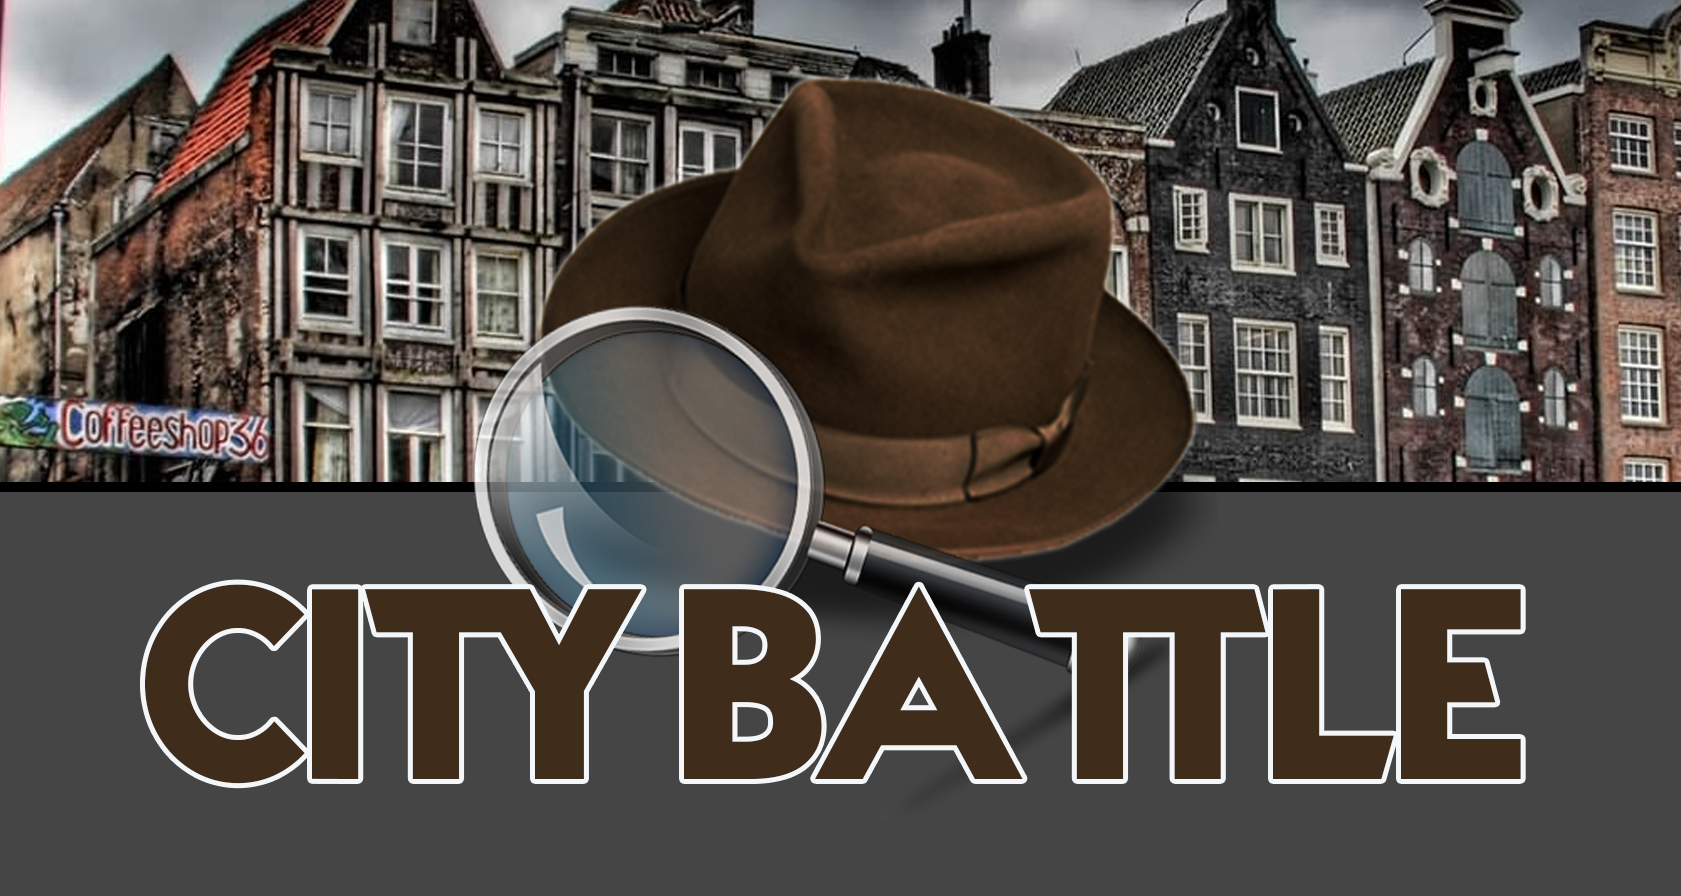 Personeelsuitje Rotterdam: De Ultieme City Battle